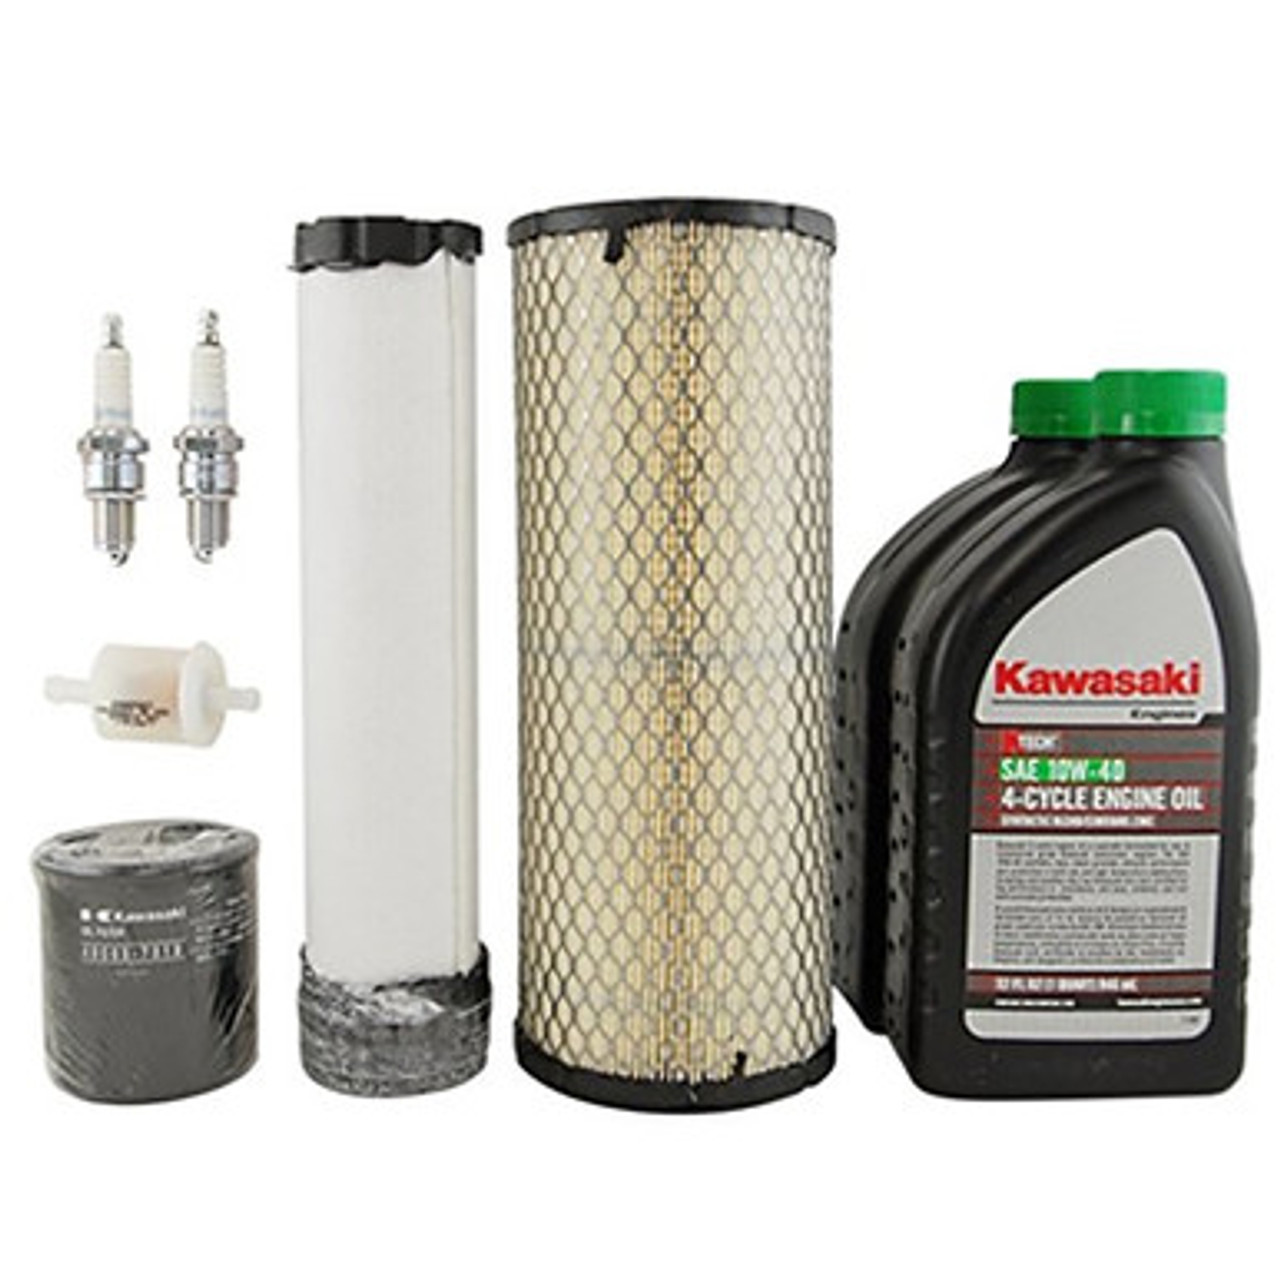 Kawasaki Tune up kit| Kawasaki 99969-6527 | Tune up kit